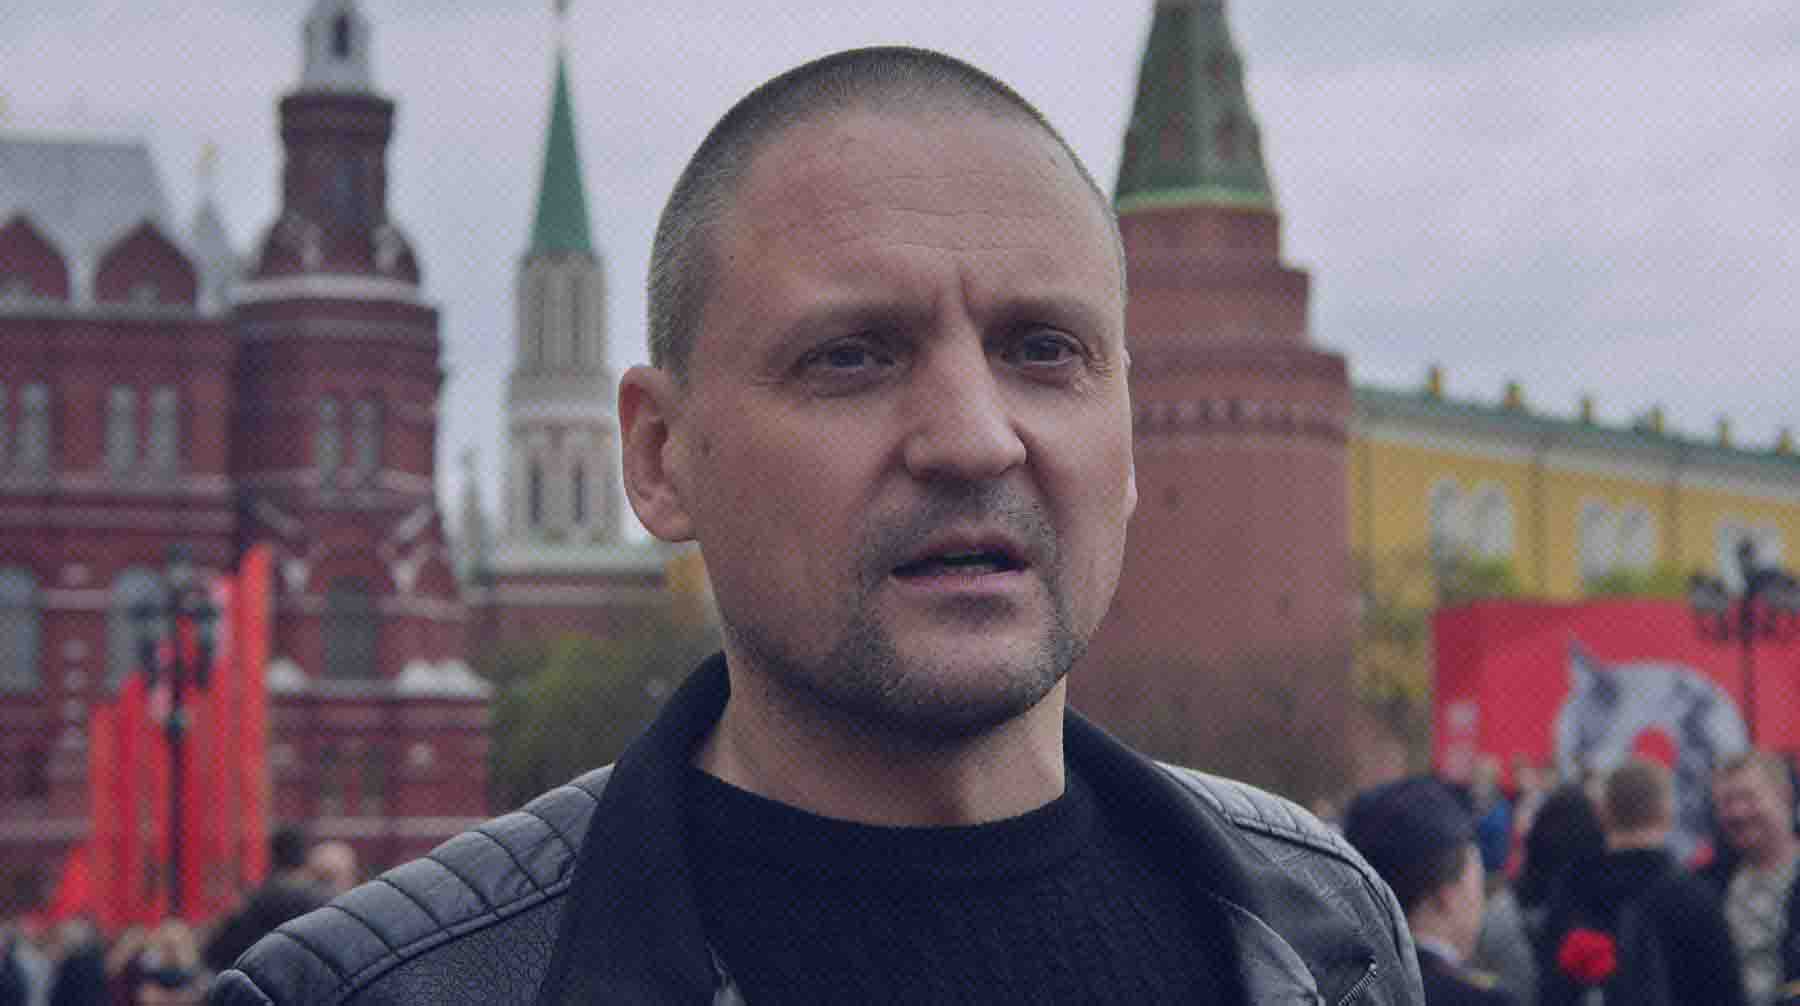 Dailystorm - В КПРФ пообещали «максимально помогать» задержанному лидеру «Левого фронта» Удальцову